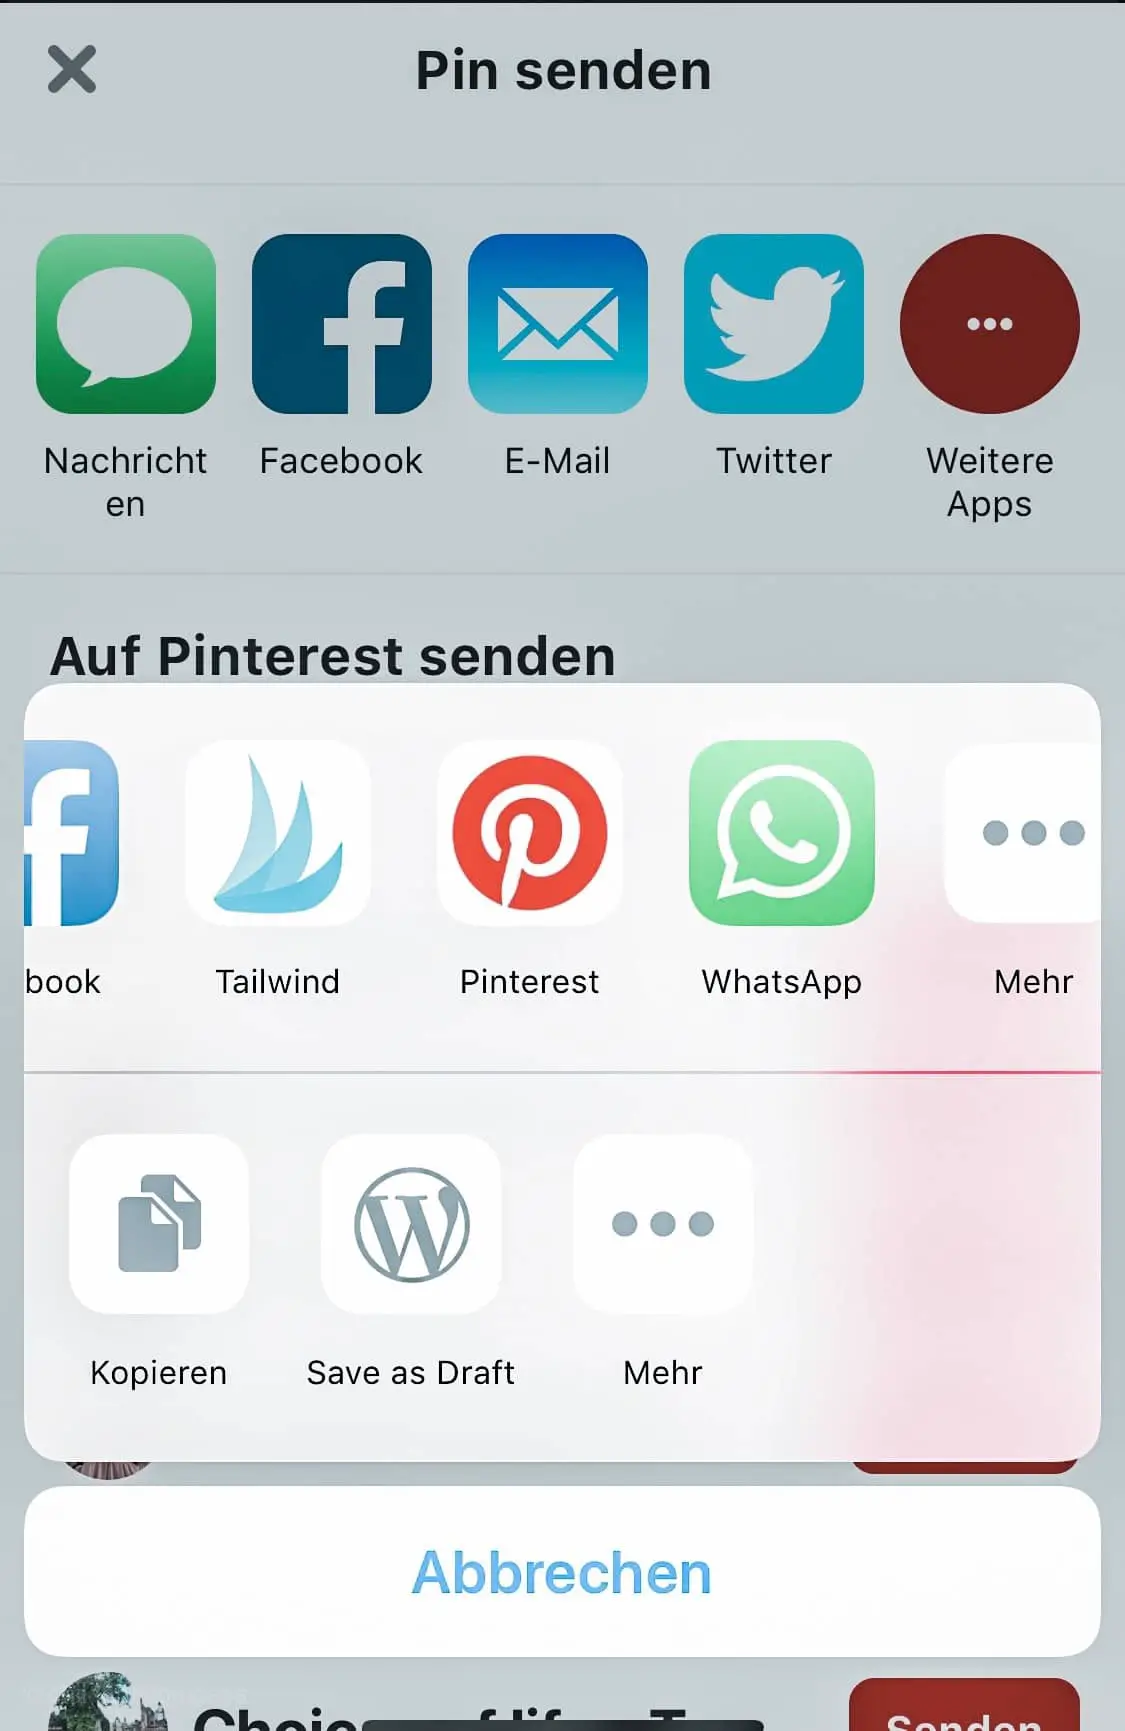 Tailwind Anleitung für Pinterest - automatisiert pinnen und Pins vorplanen mit Tailwind für Pinterest